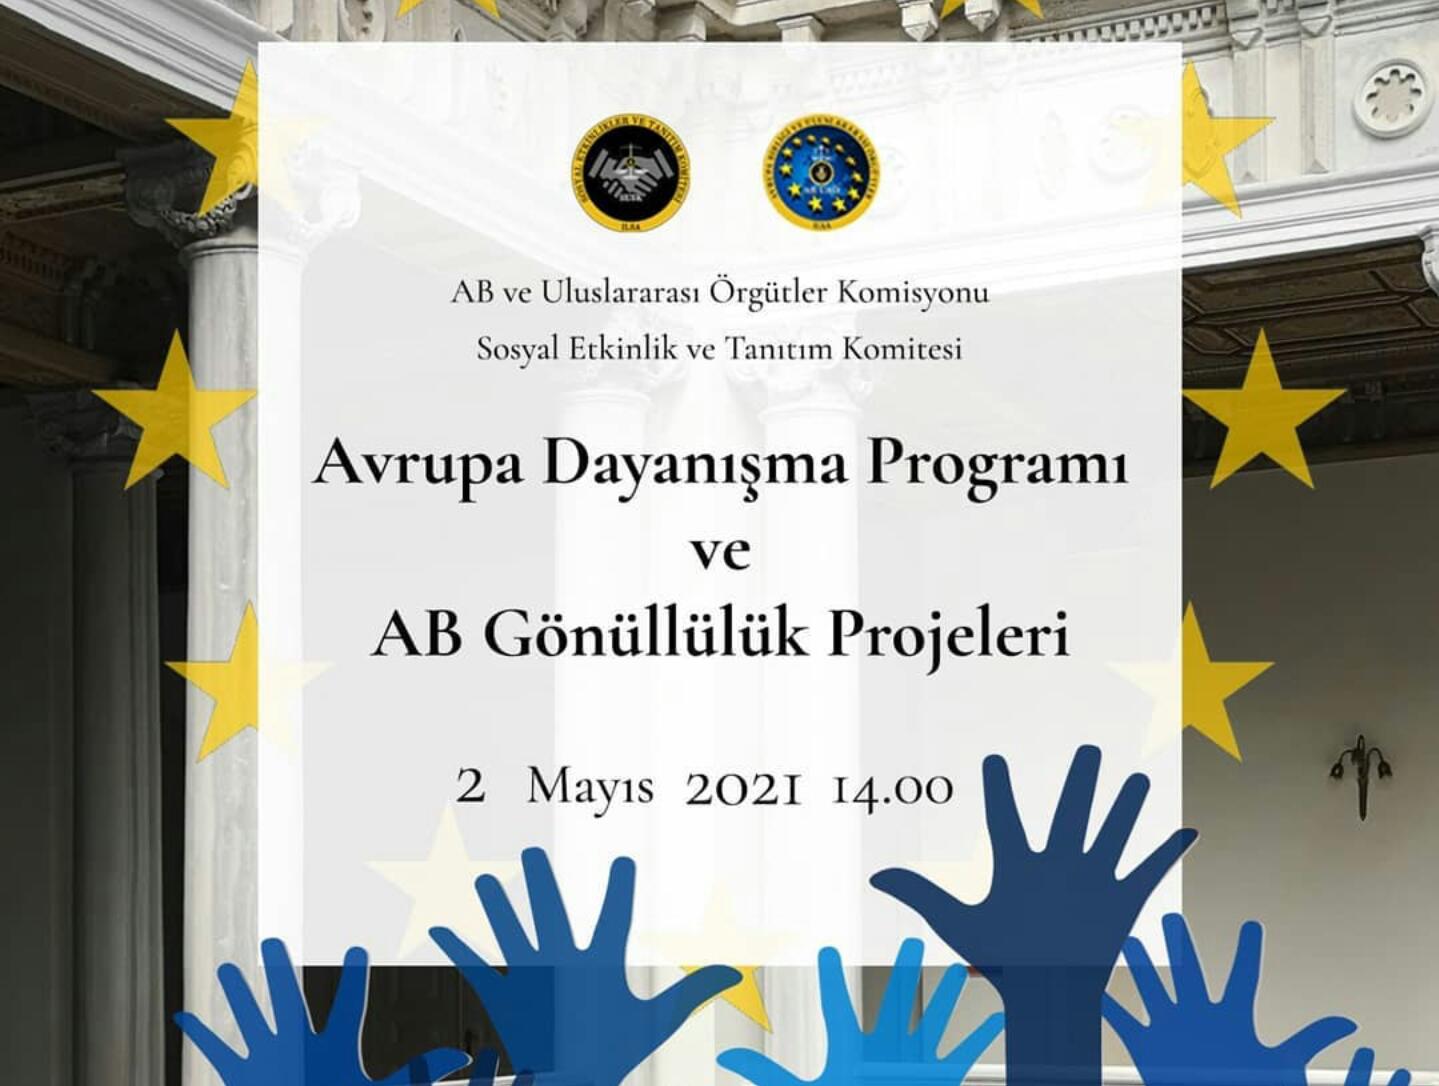 Avrupa Dayanışma Programı ve AB Gönüllülük Projeleri